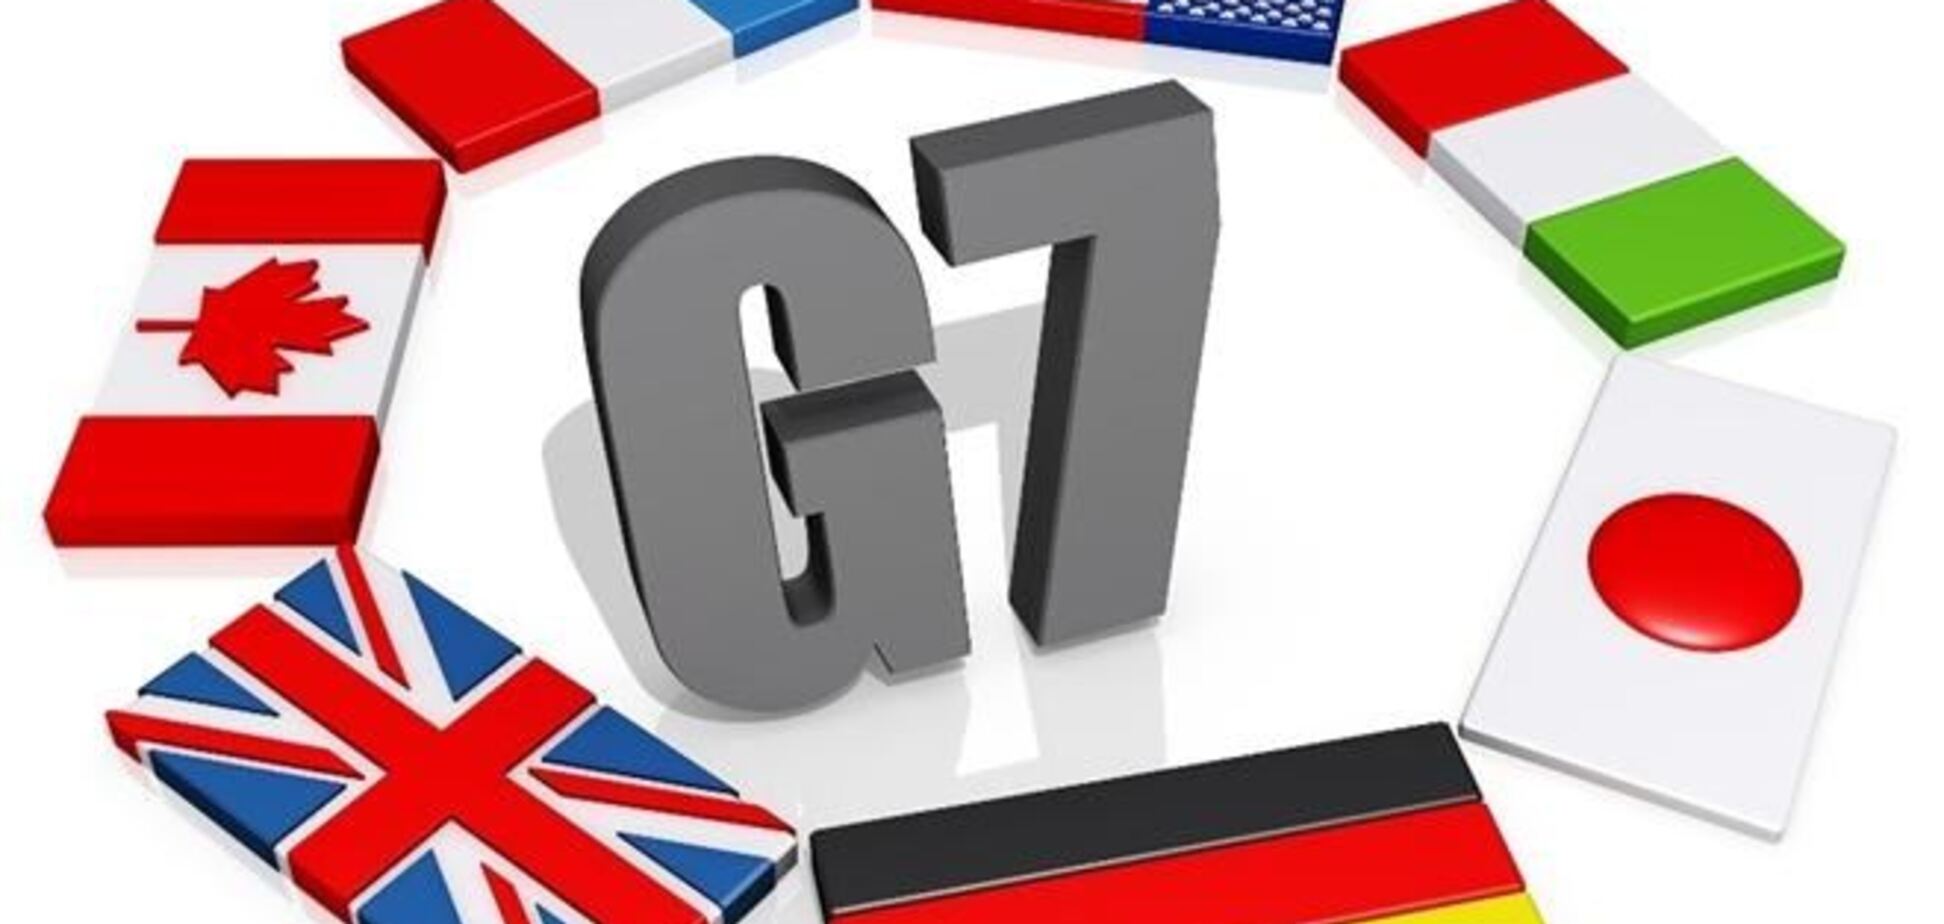 Саміт G7 пройде в Брюсселі замість саміту G8 в Сочі